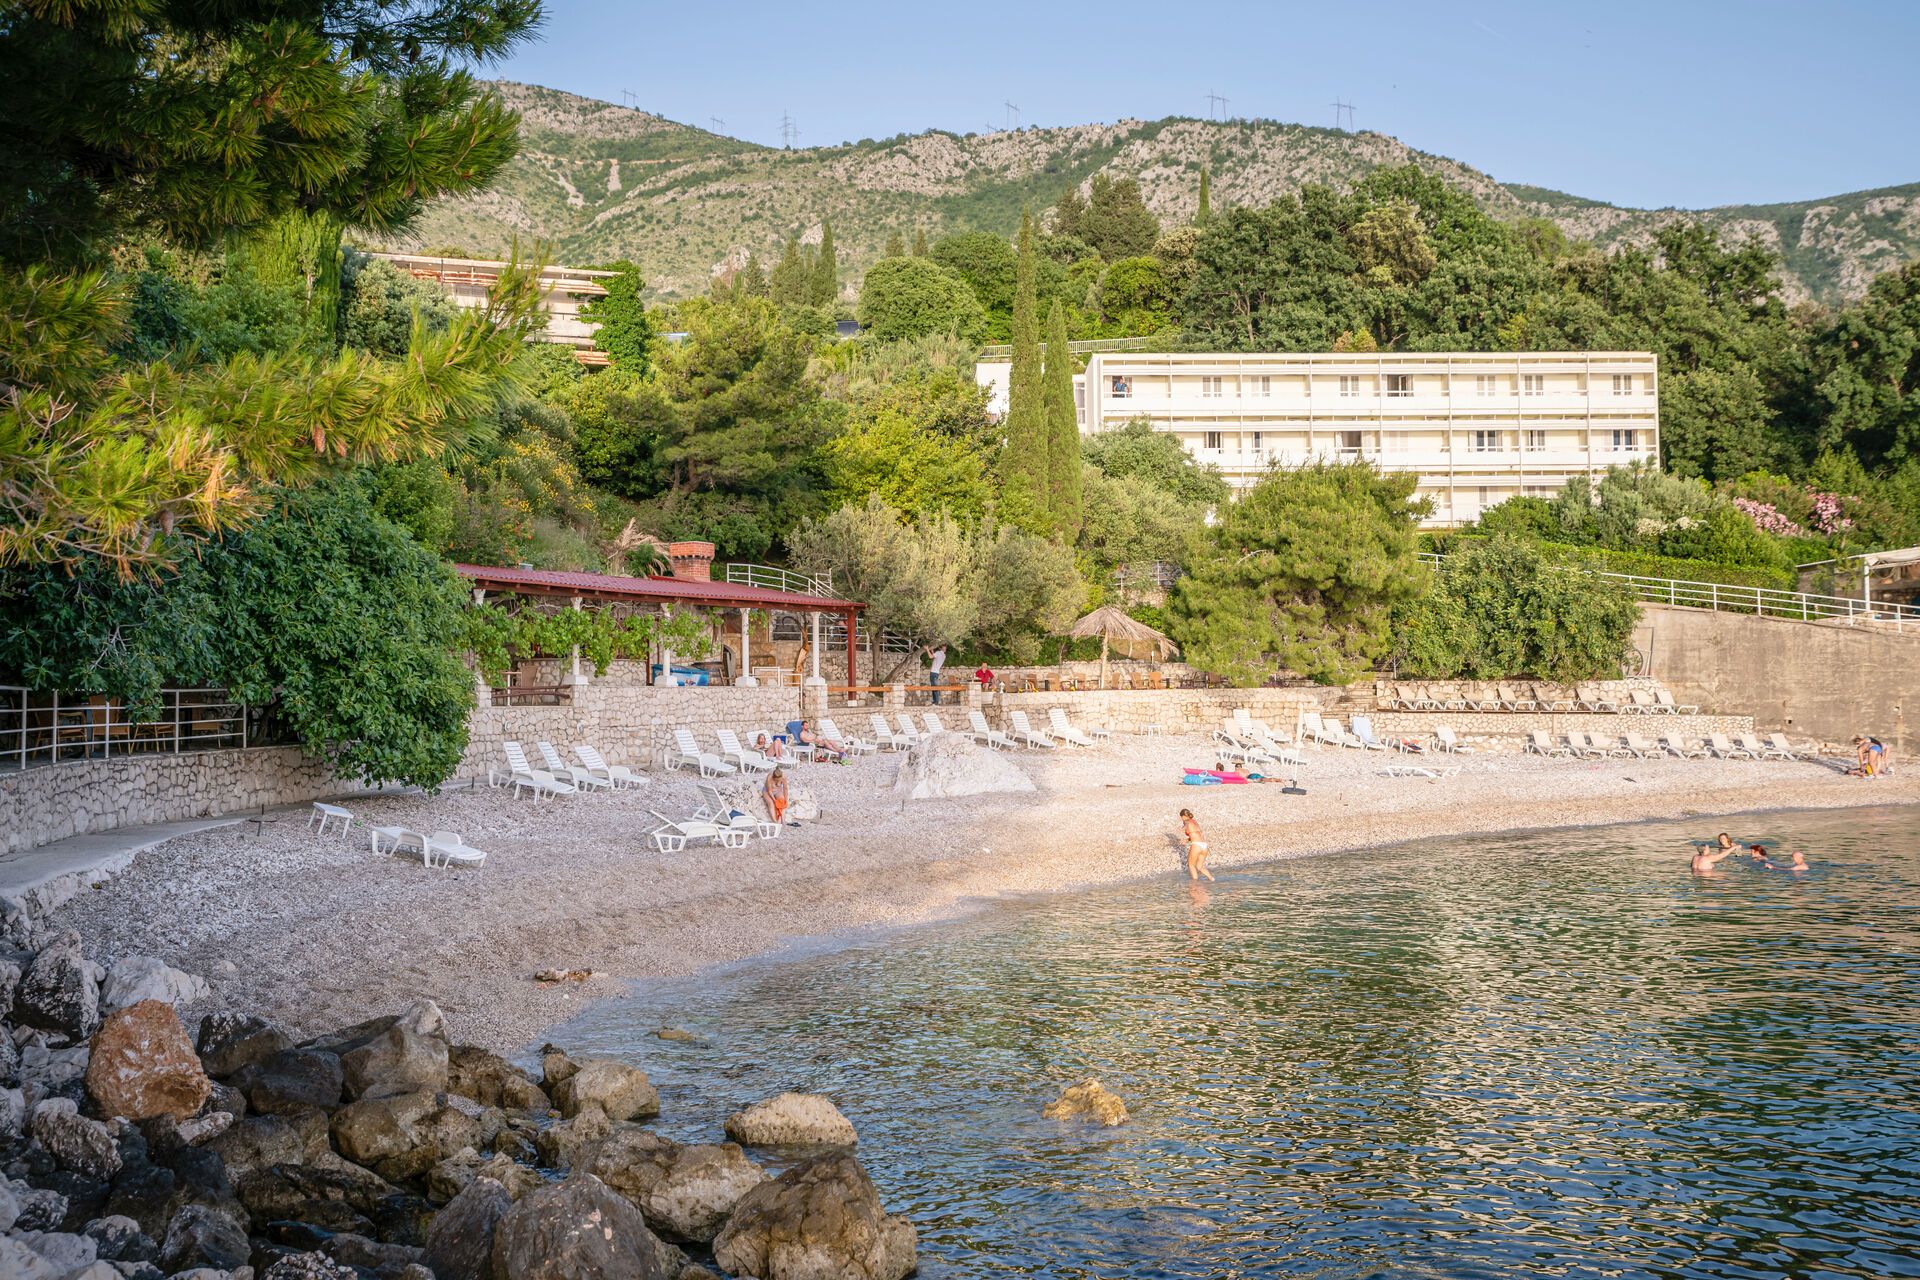 Croatie - Mlini  - Hotel Villas Plat 3*